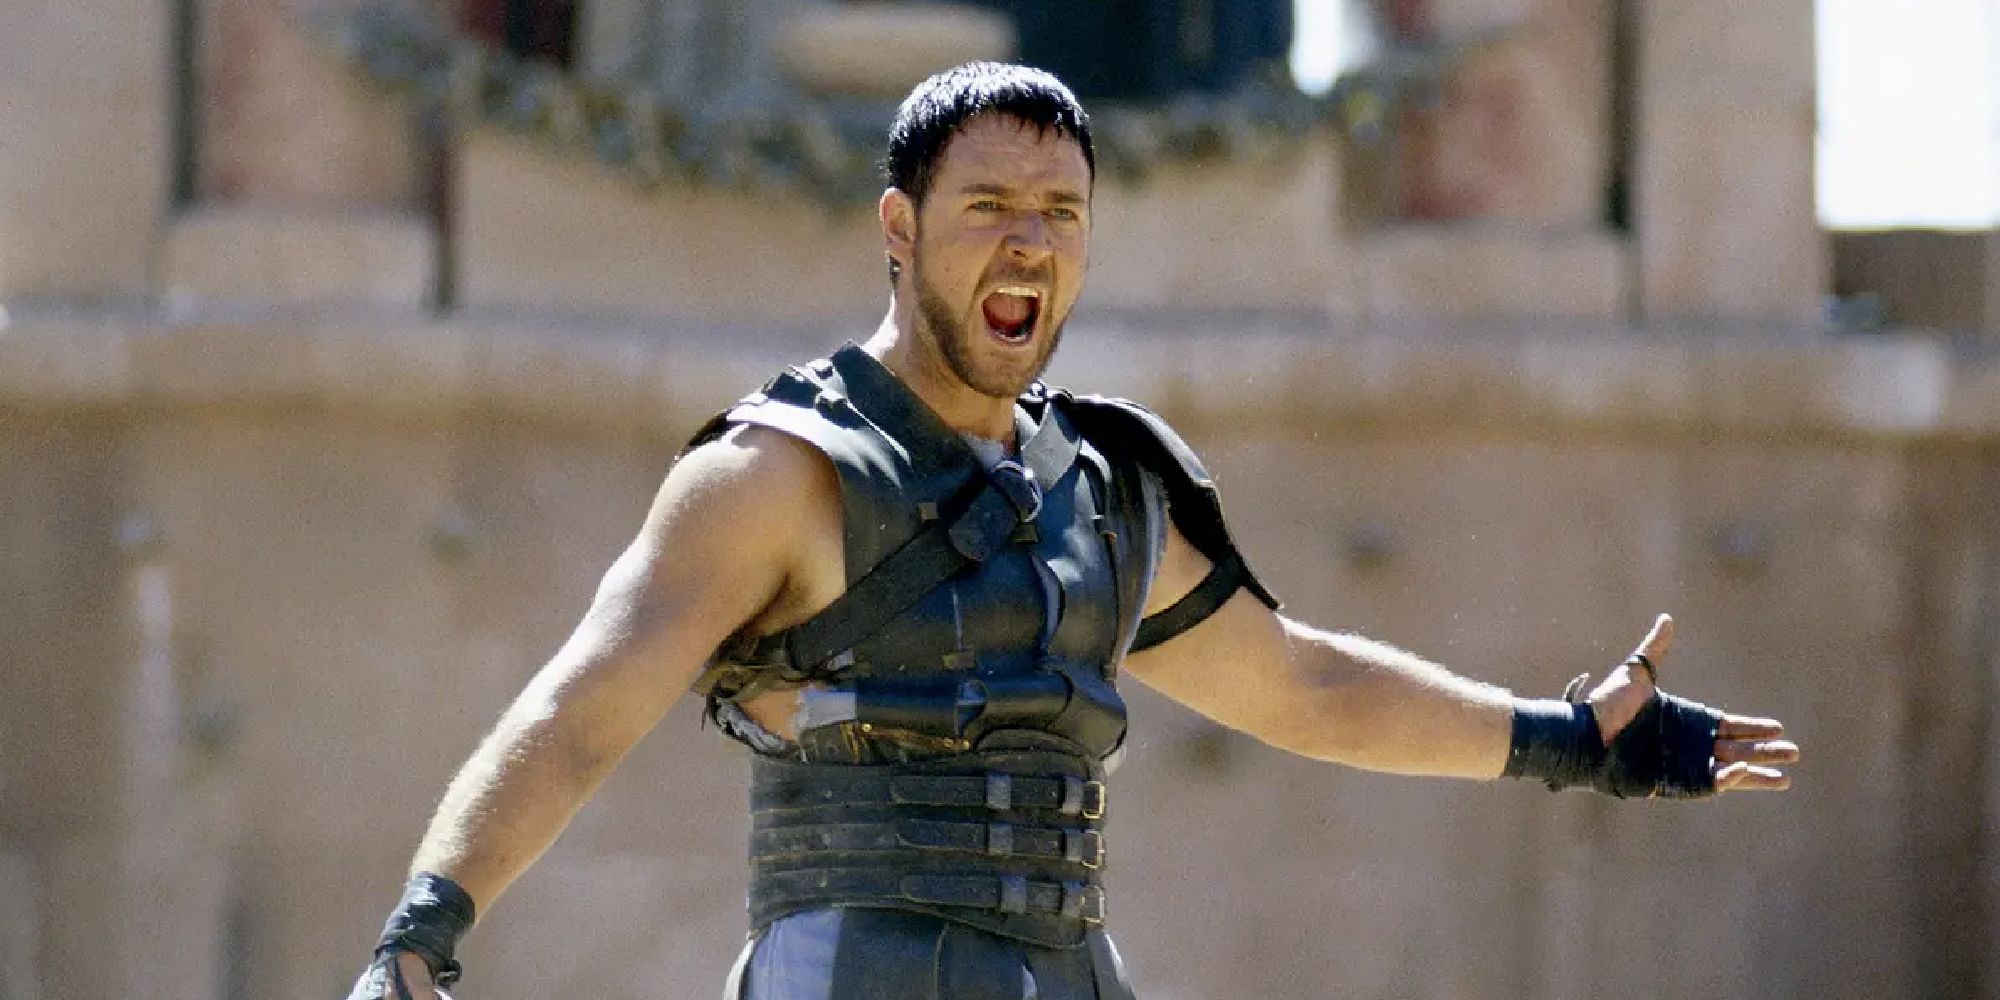 Russell Crowe sings in Gladiator